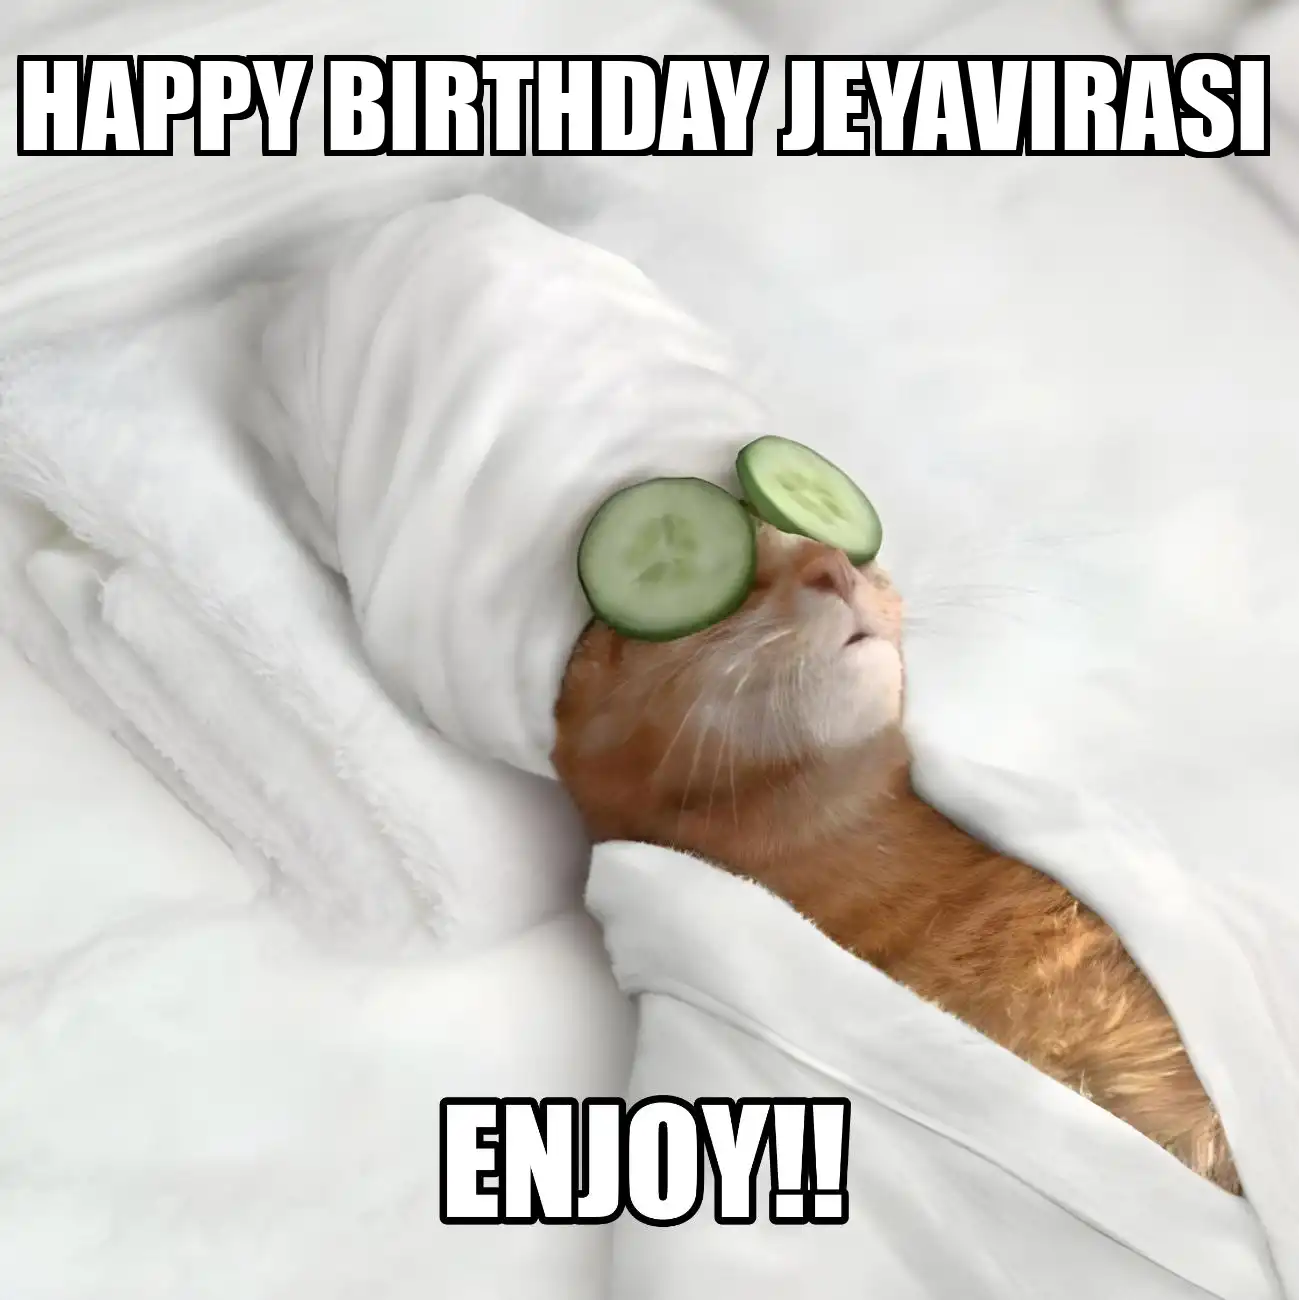 Happy Birthday Jeyavirasi Enjoy Cat Meme